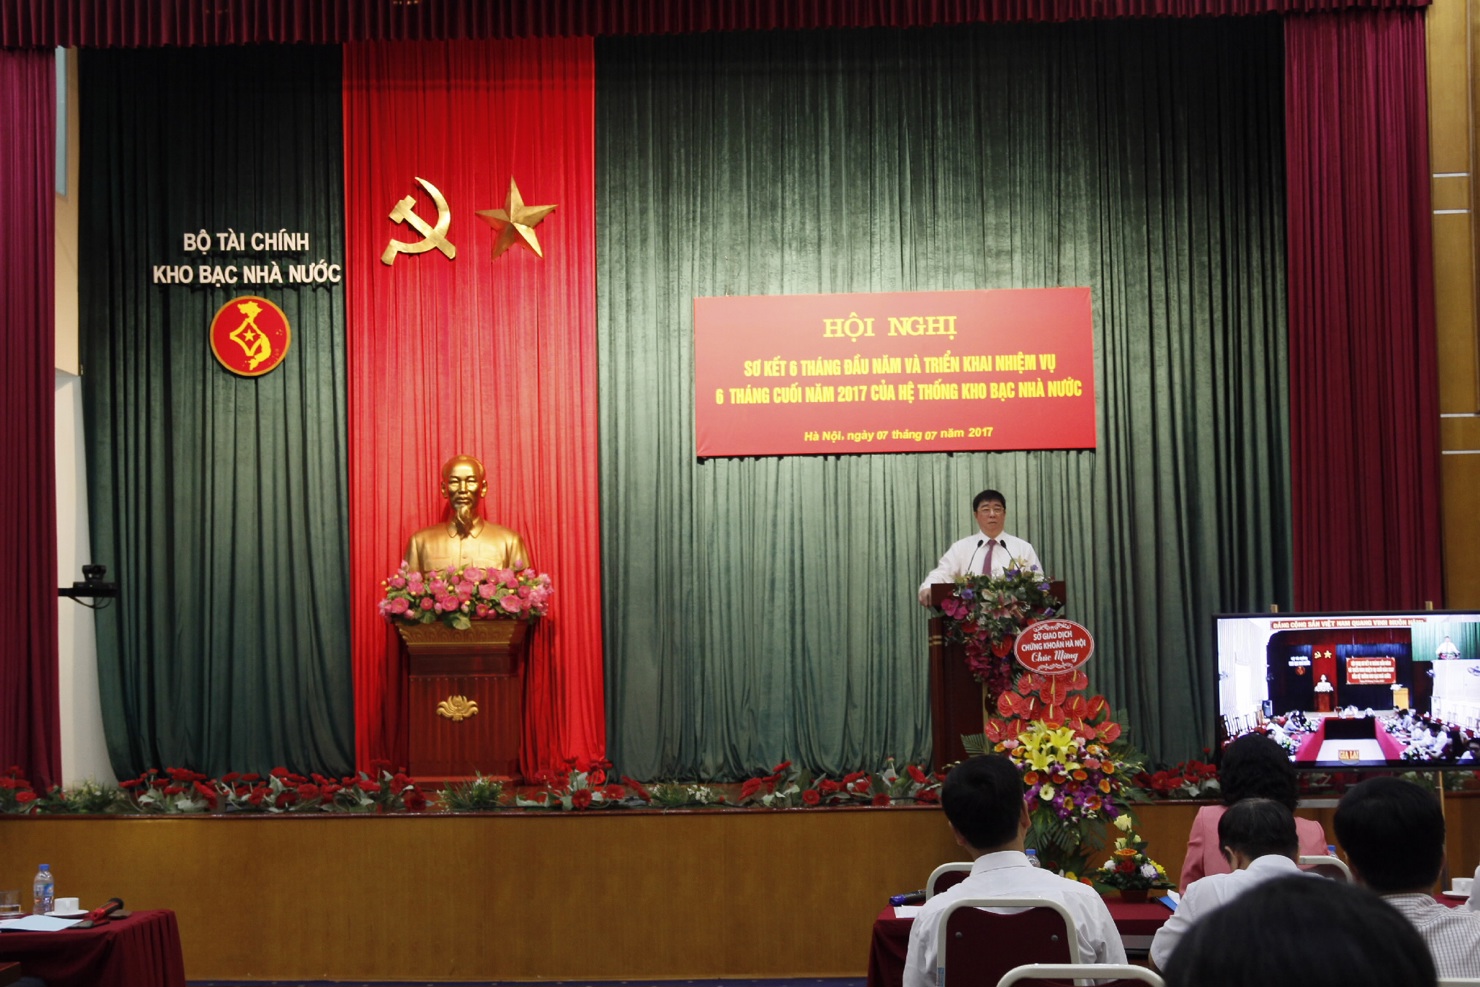 Đồng chí Nguyễn Hồng Hà, Bí thư Đảng ủy, Tổng Giám đốc KBNN phát biểu chỉ đạo tại Hội nghị Sơ kết 6 tháng đầu năm và triển khai nhiệm vụ 6 tháng cuối năm 2017 của Hệ thống KBNN.